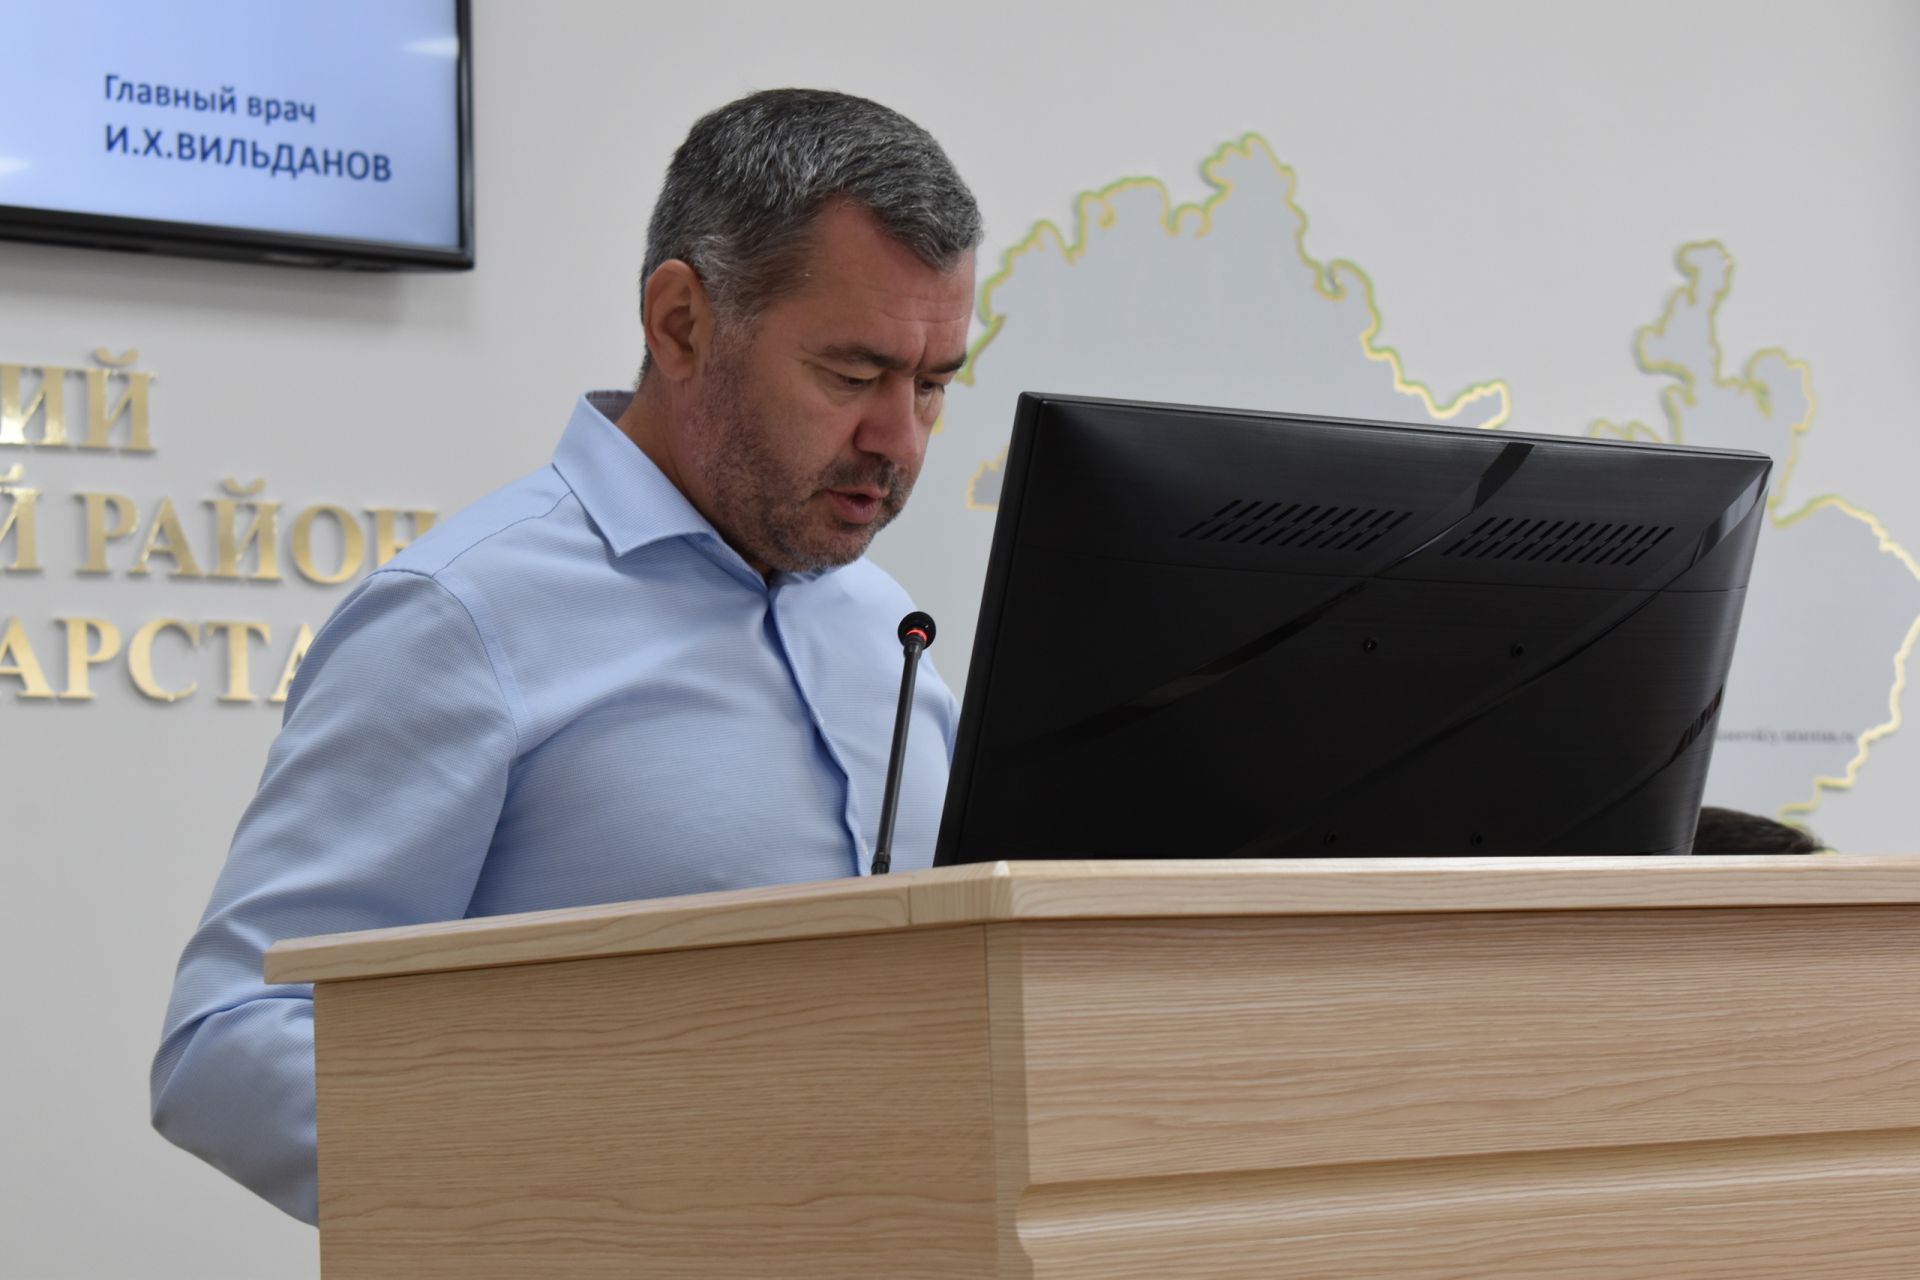 В Алексеевском состоялась рабочая сессия на тему наркотической и алкогольной зависимости среди населения